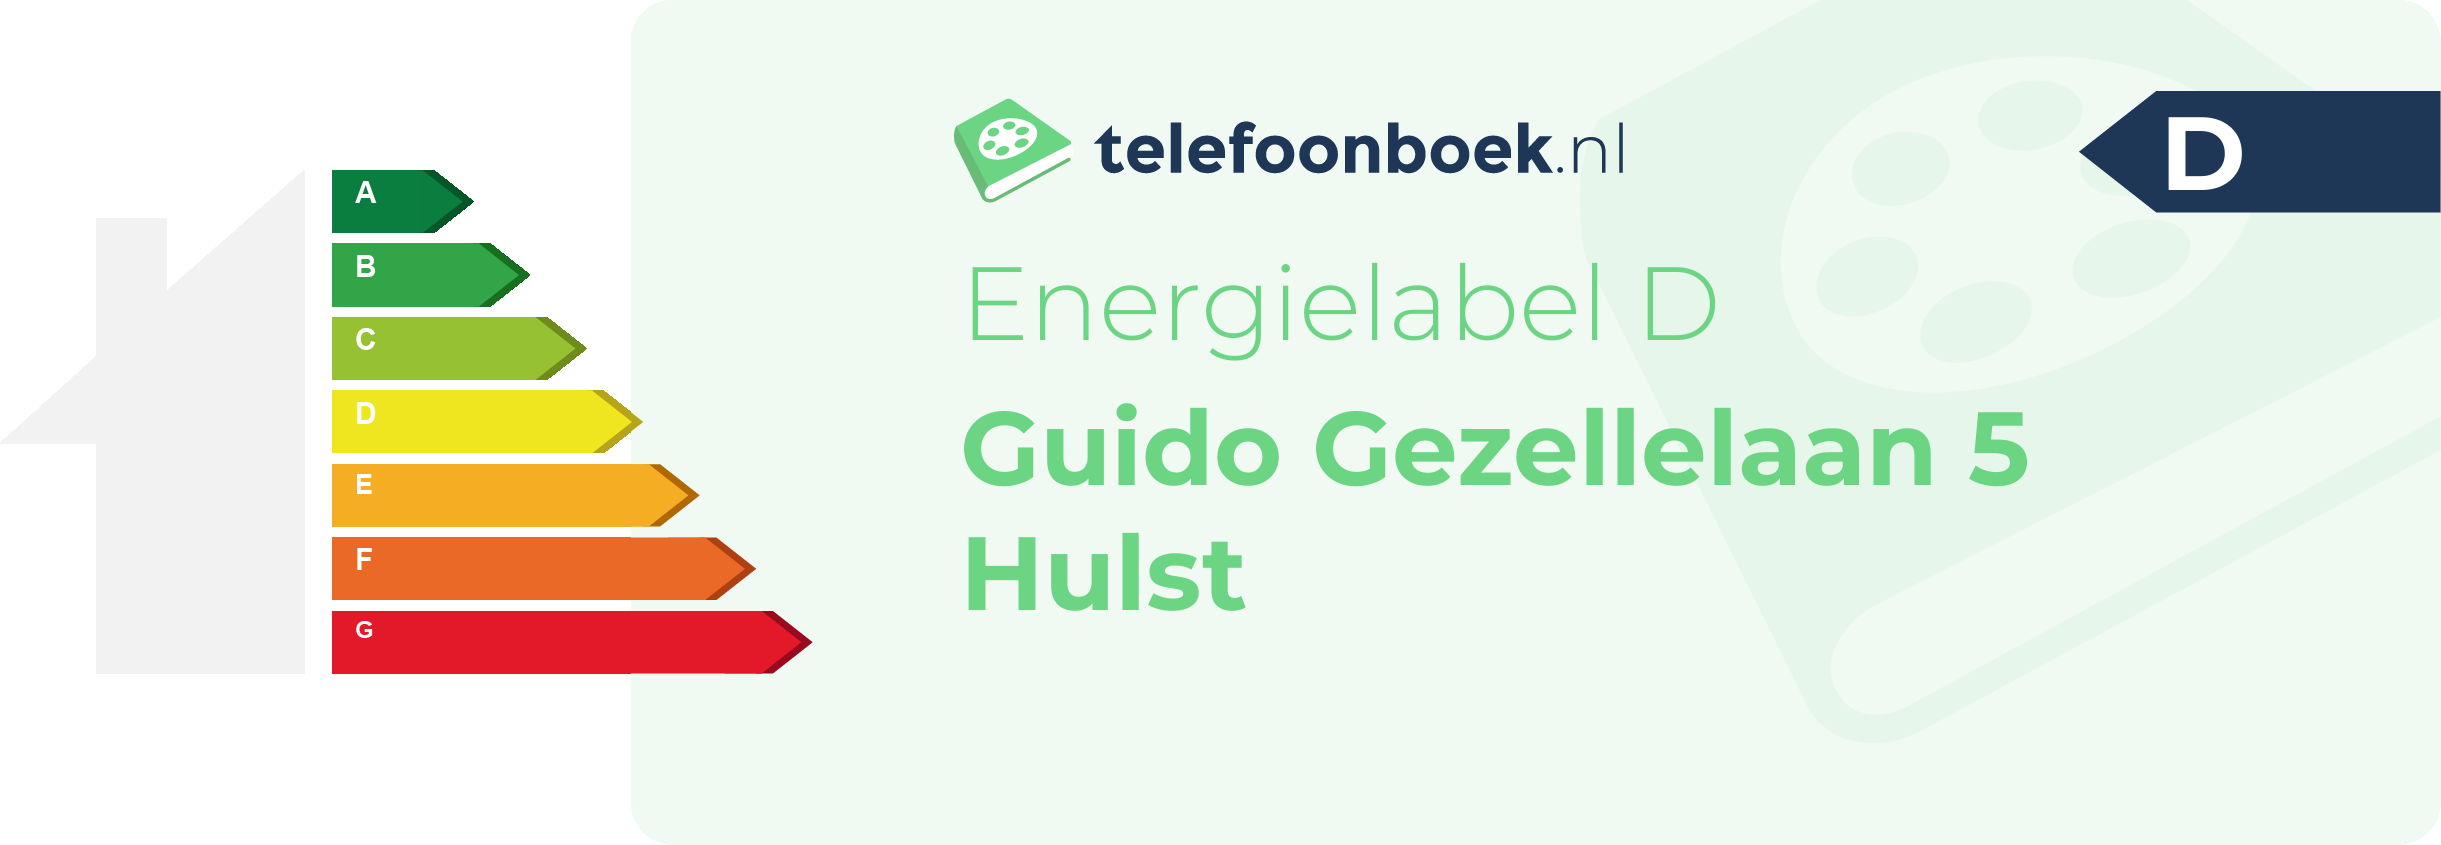 Energielabel Guido Gezellelaan 5 Hulst